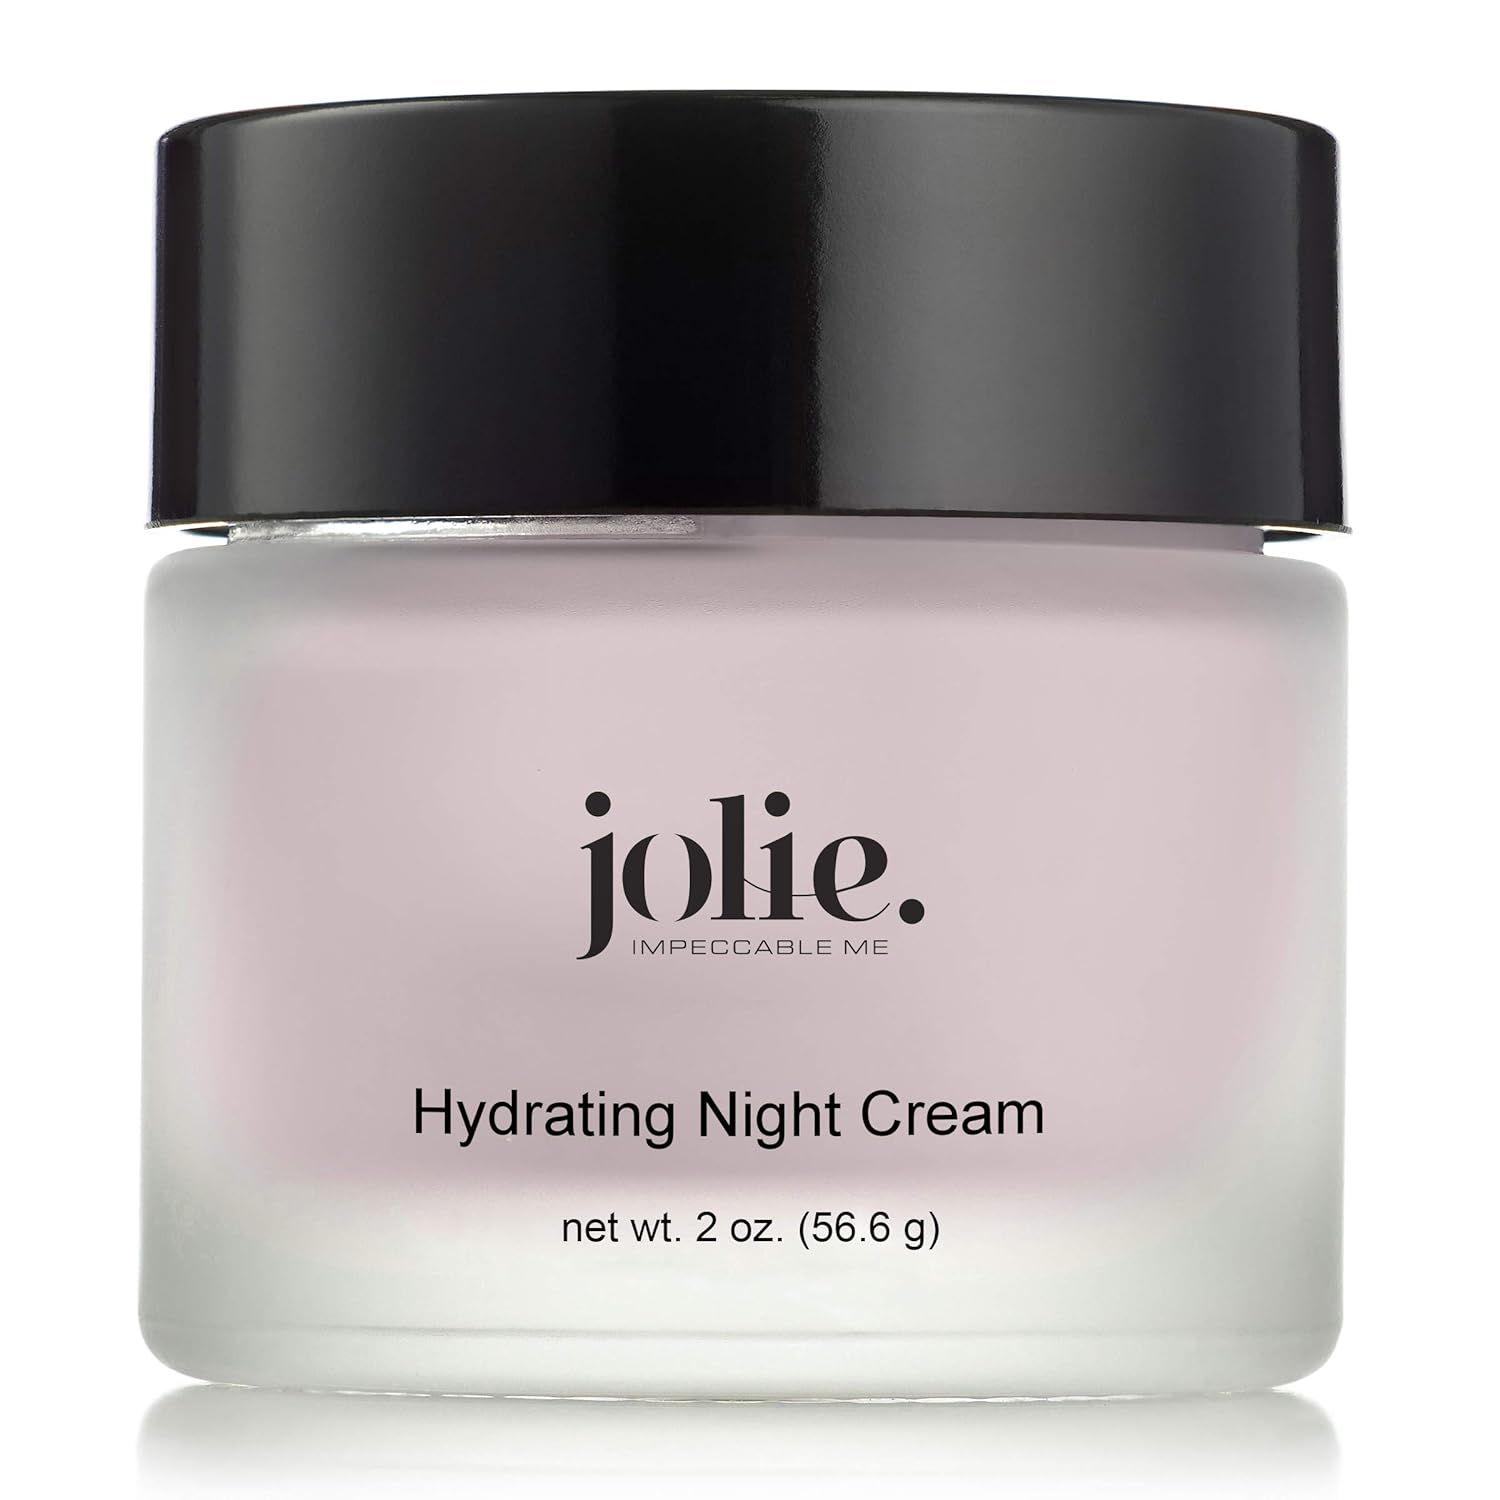 Esupli.com Jolie Hydrating Night Cream - P.M. Facial Moisturizer 2 oz